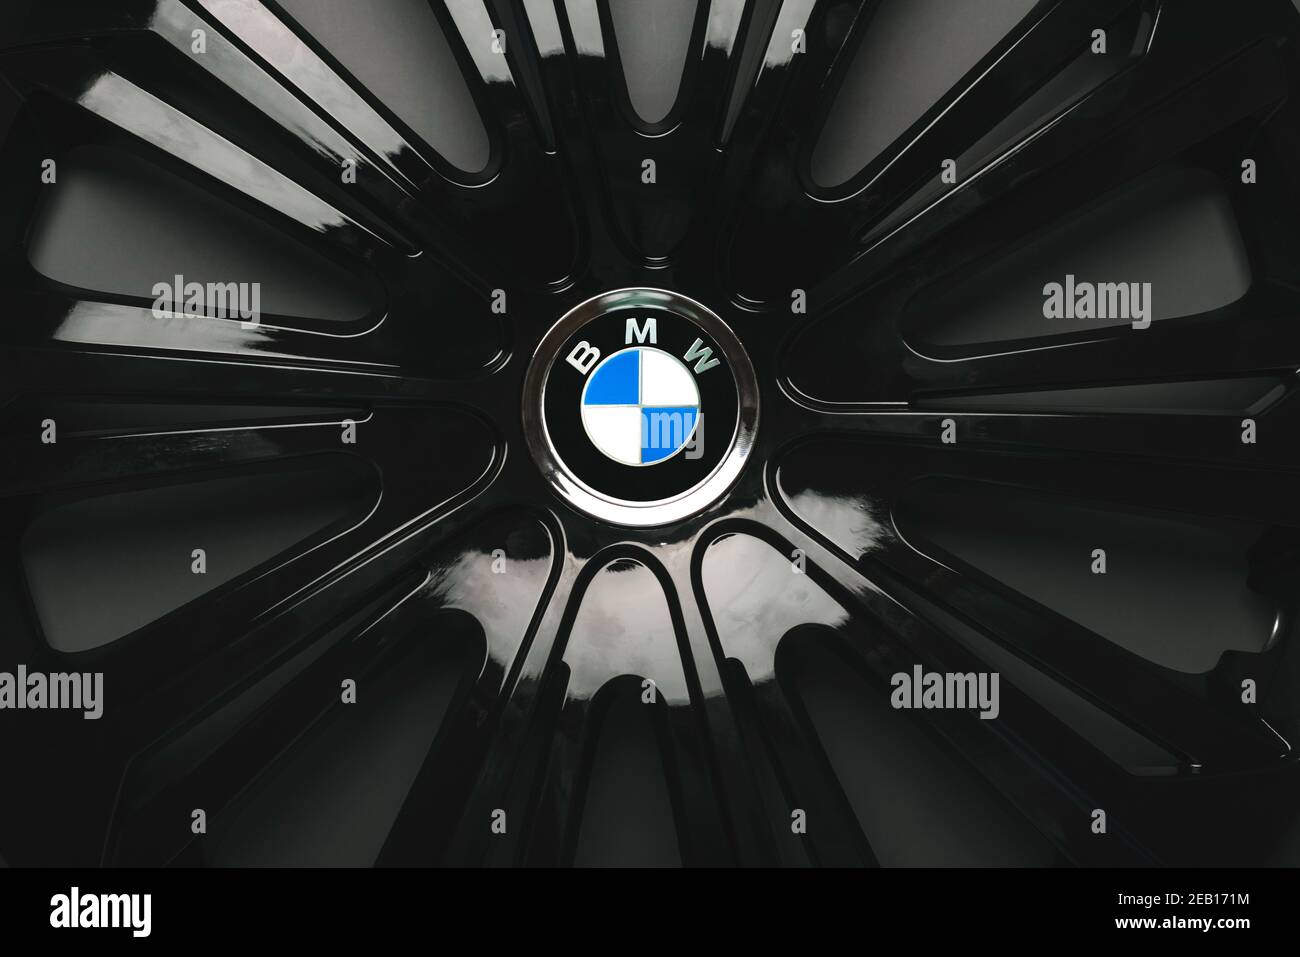 Gros plan du logo BMW sur la jante de la voiture Photo Stock - Alamy